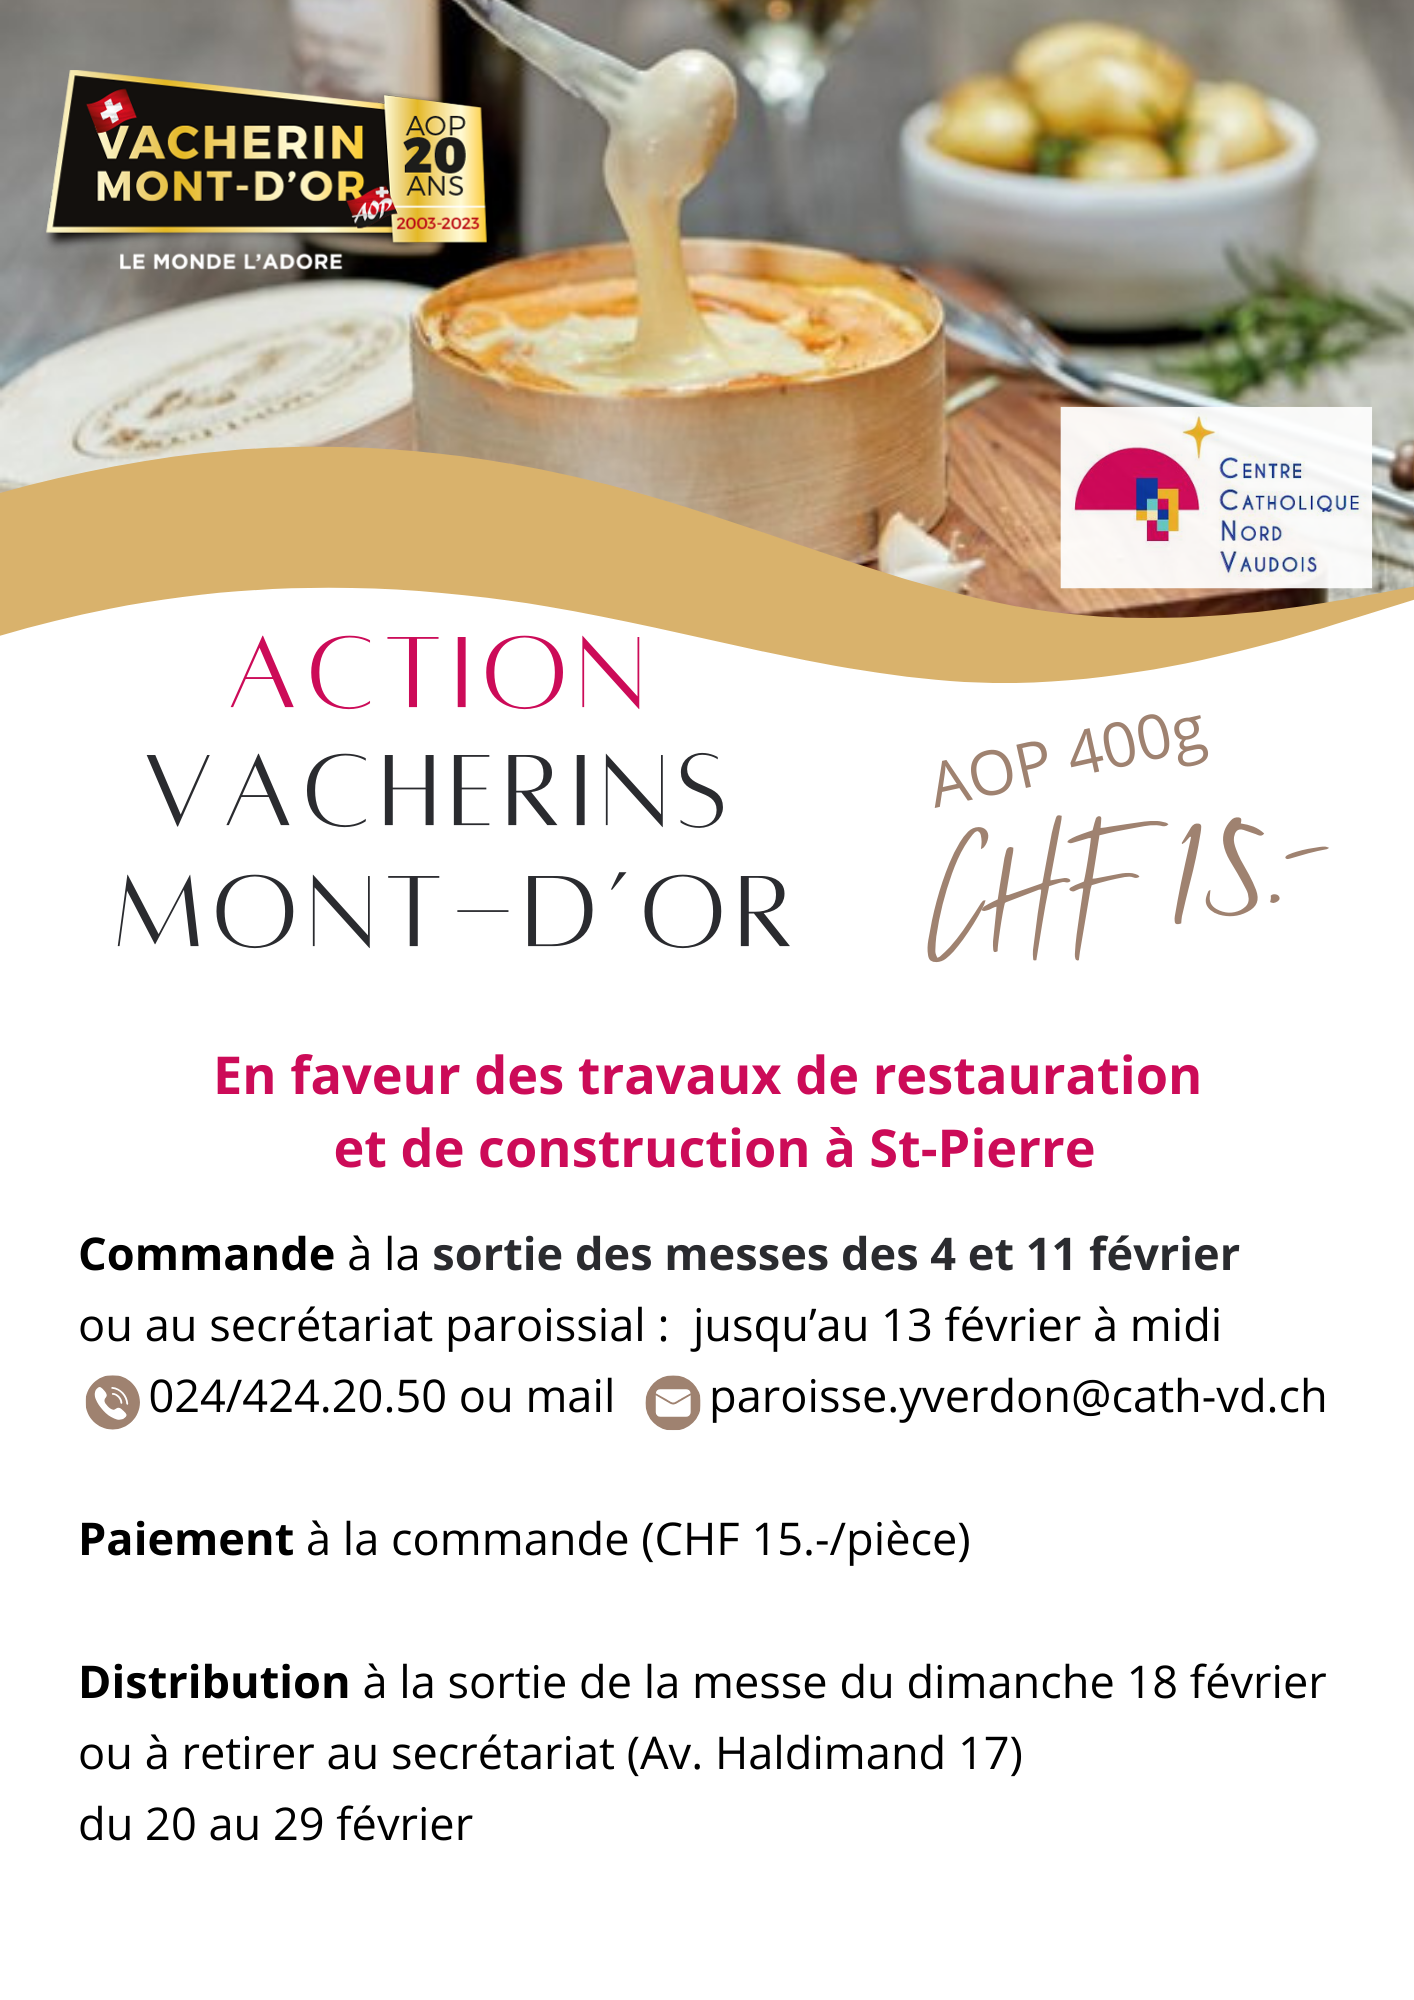 Action Vacherins mont-d’or (1)